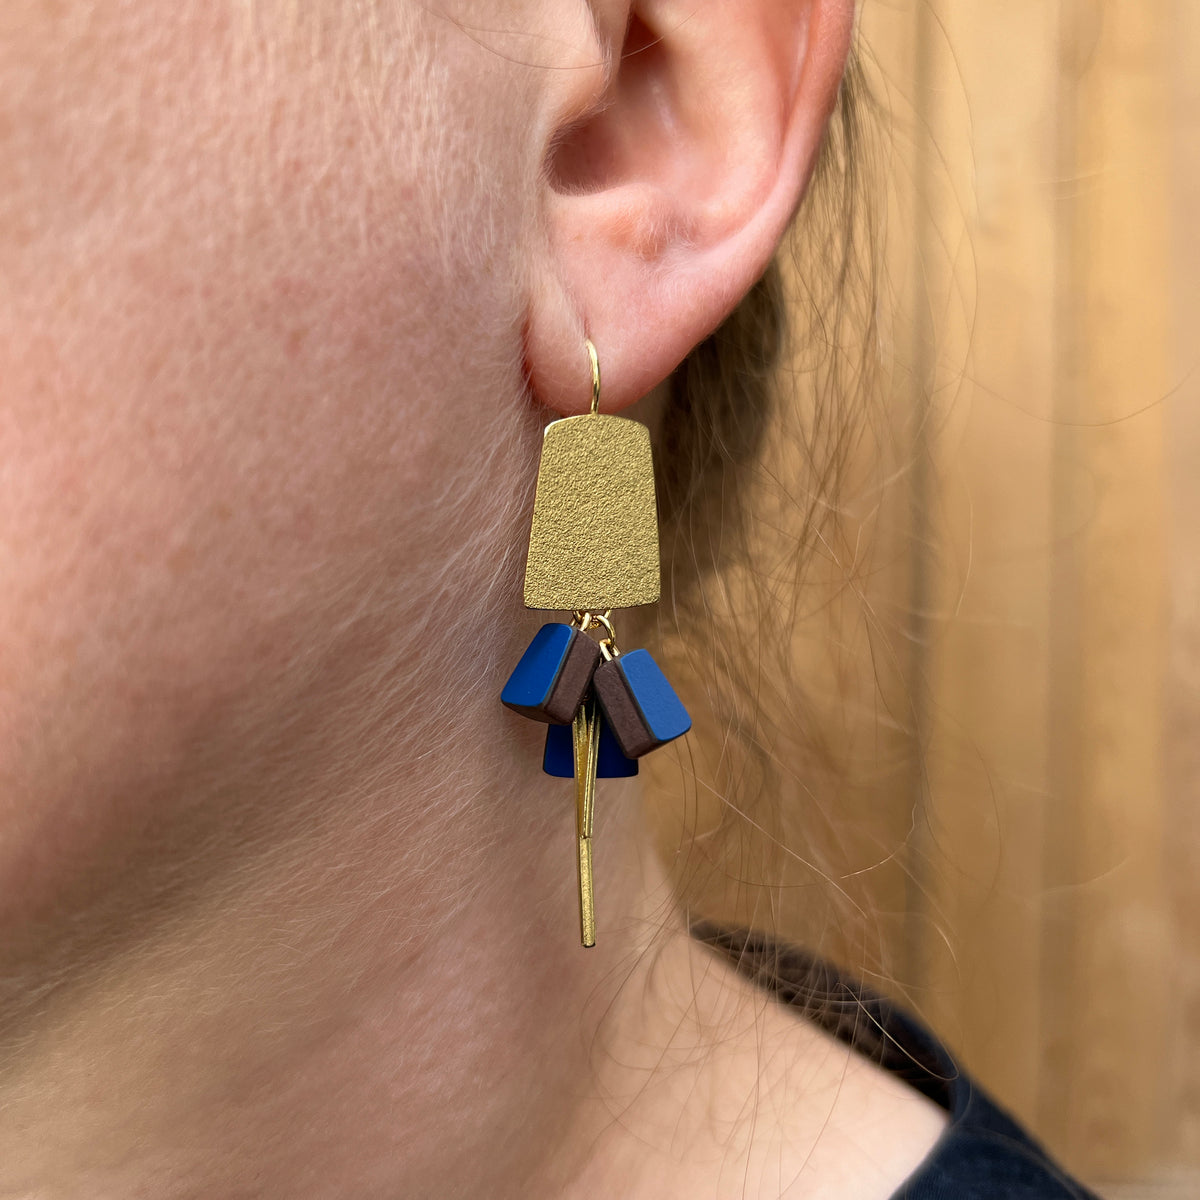 Bell cluster earrings - gold